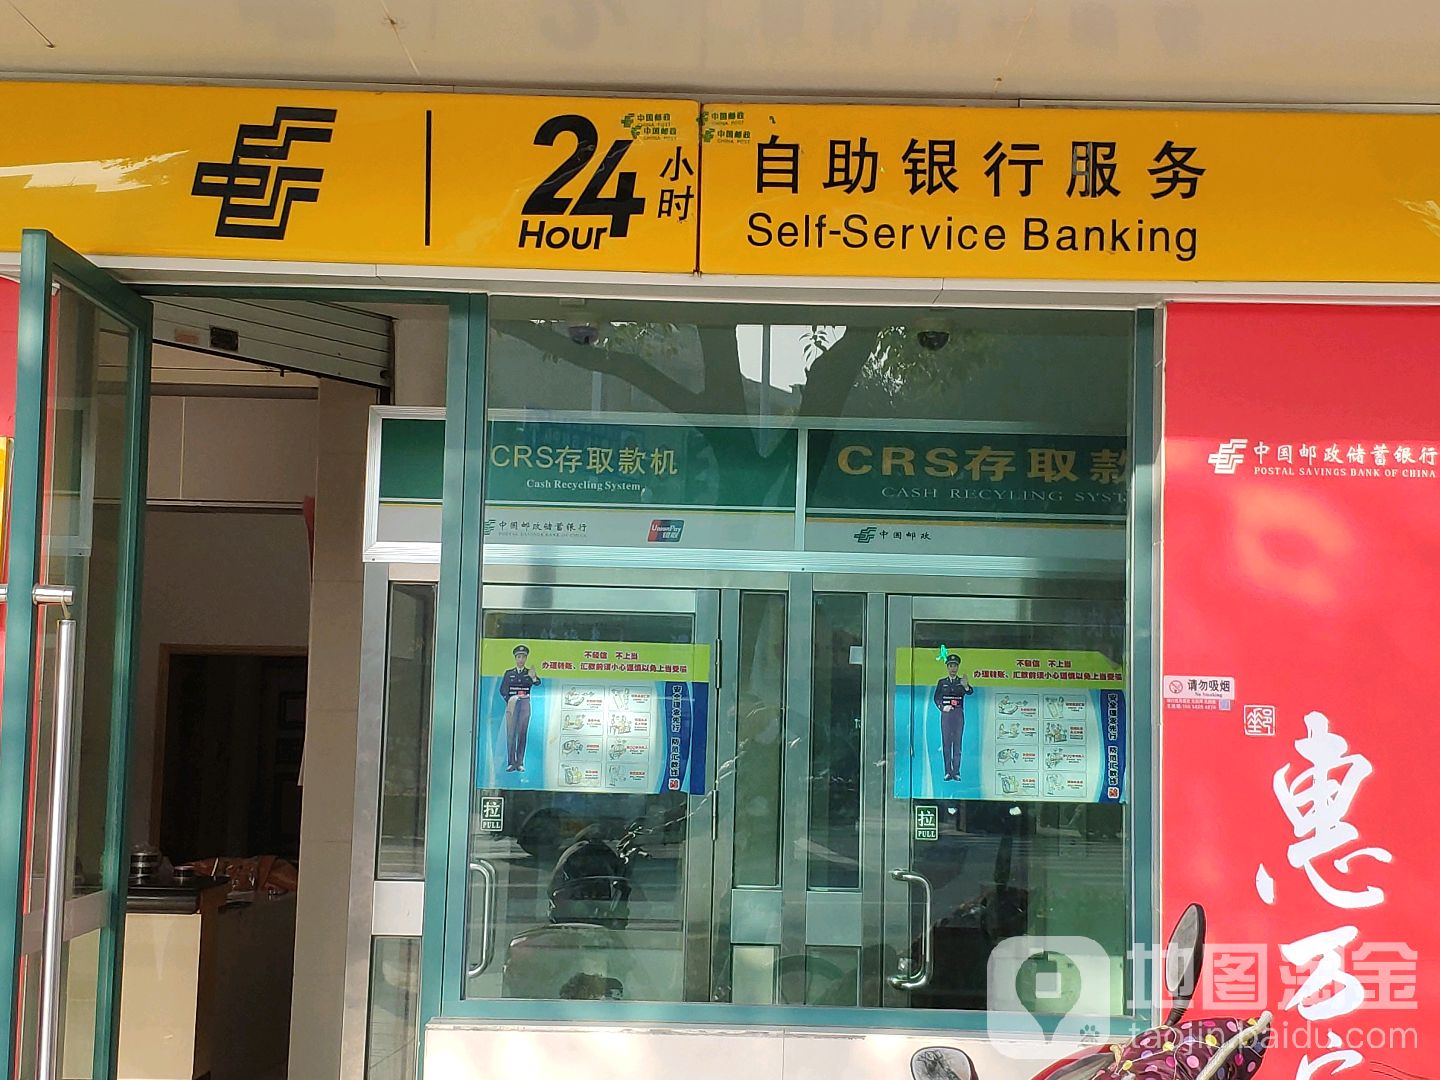 中國郵政儲蓄銀行24小時自助銀行(寧波鄞州區古林營業所)